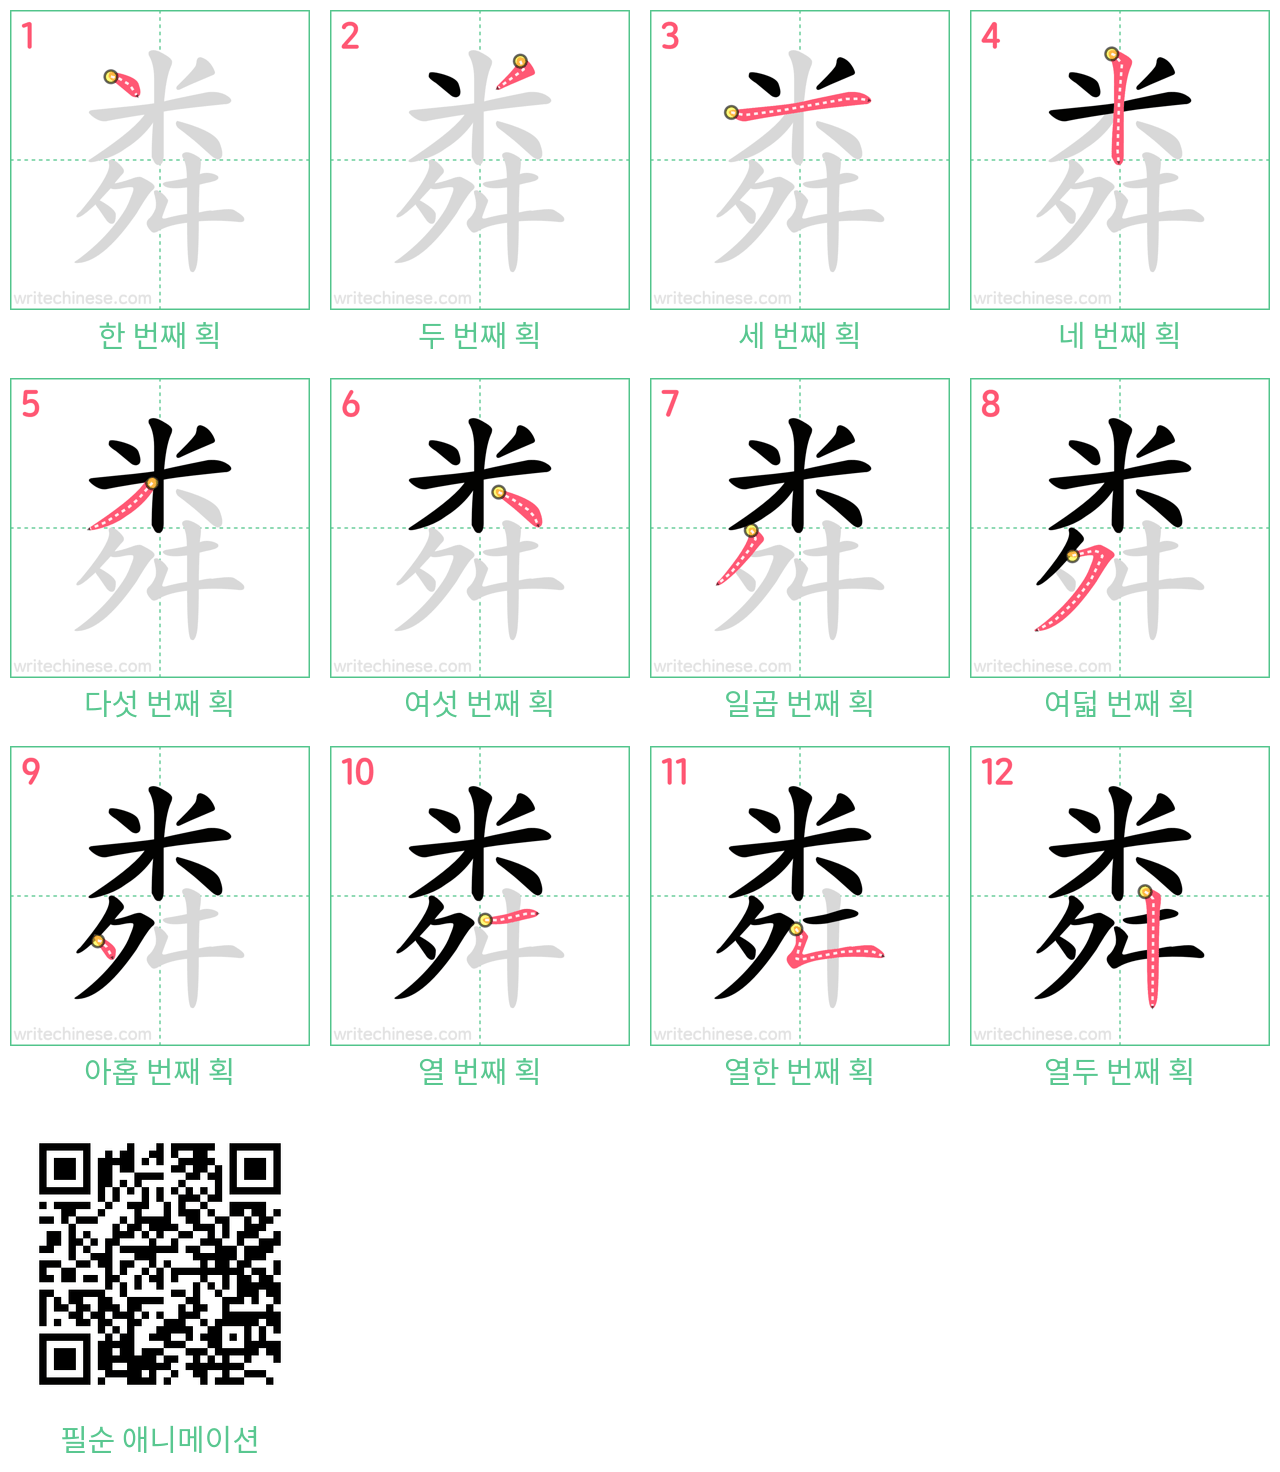 粦 step-by-step stroke order diagrams